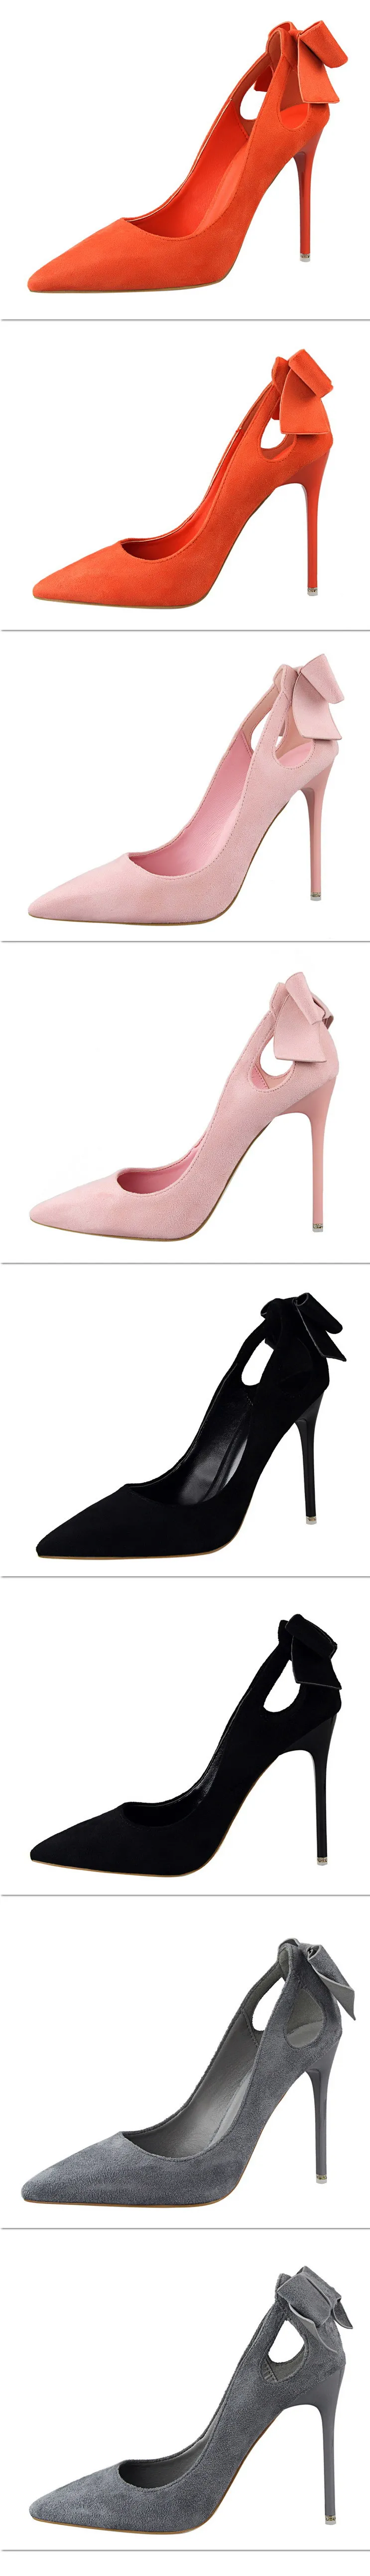 BIGTREE/обувь; женские туфли-лодочки; свадебные туфли с бантом; сезон весна; Новинка; женская обувь на высоком каблуке; женская обувь для вечеринок; пикантная обувь на шпильке